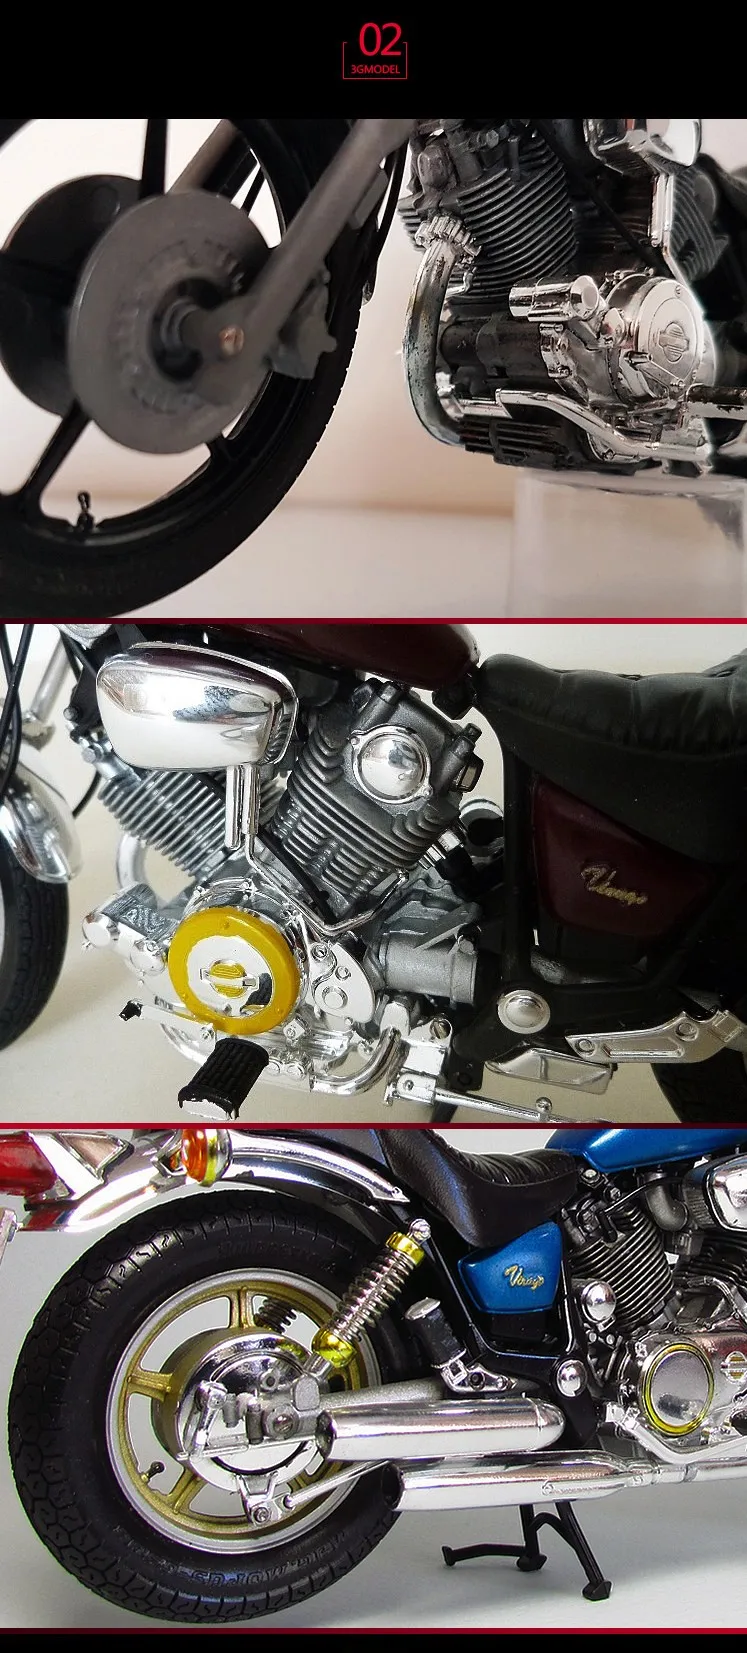 1/12 масштабная модель мотоцикла, наборы для сборки YAMAHA XV1000 Virago, комплект для сборки двигателя DIY Tamiya 14044